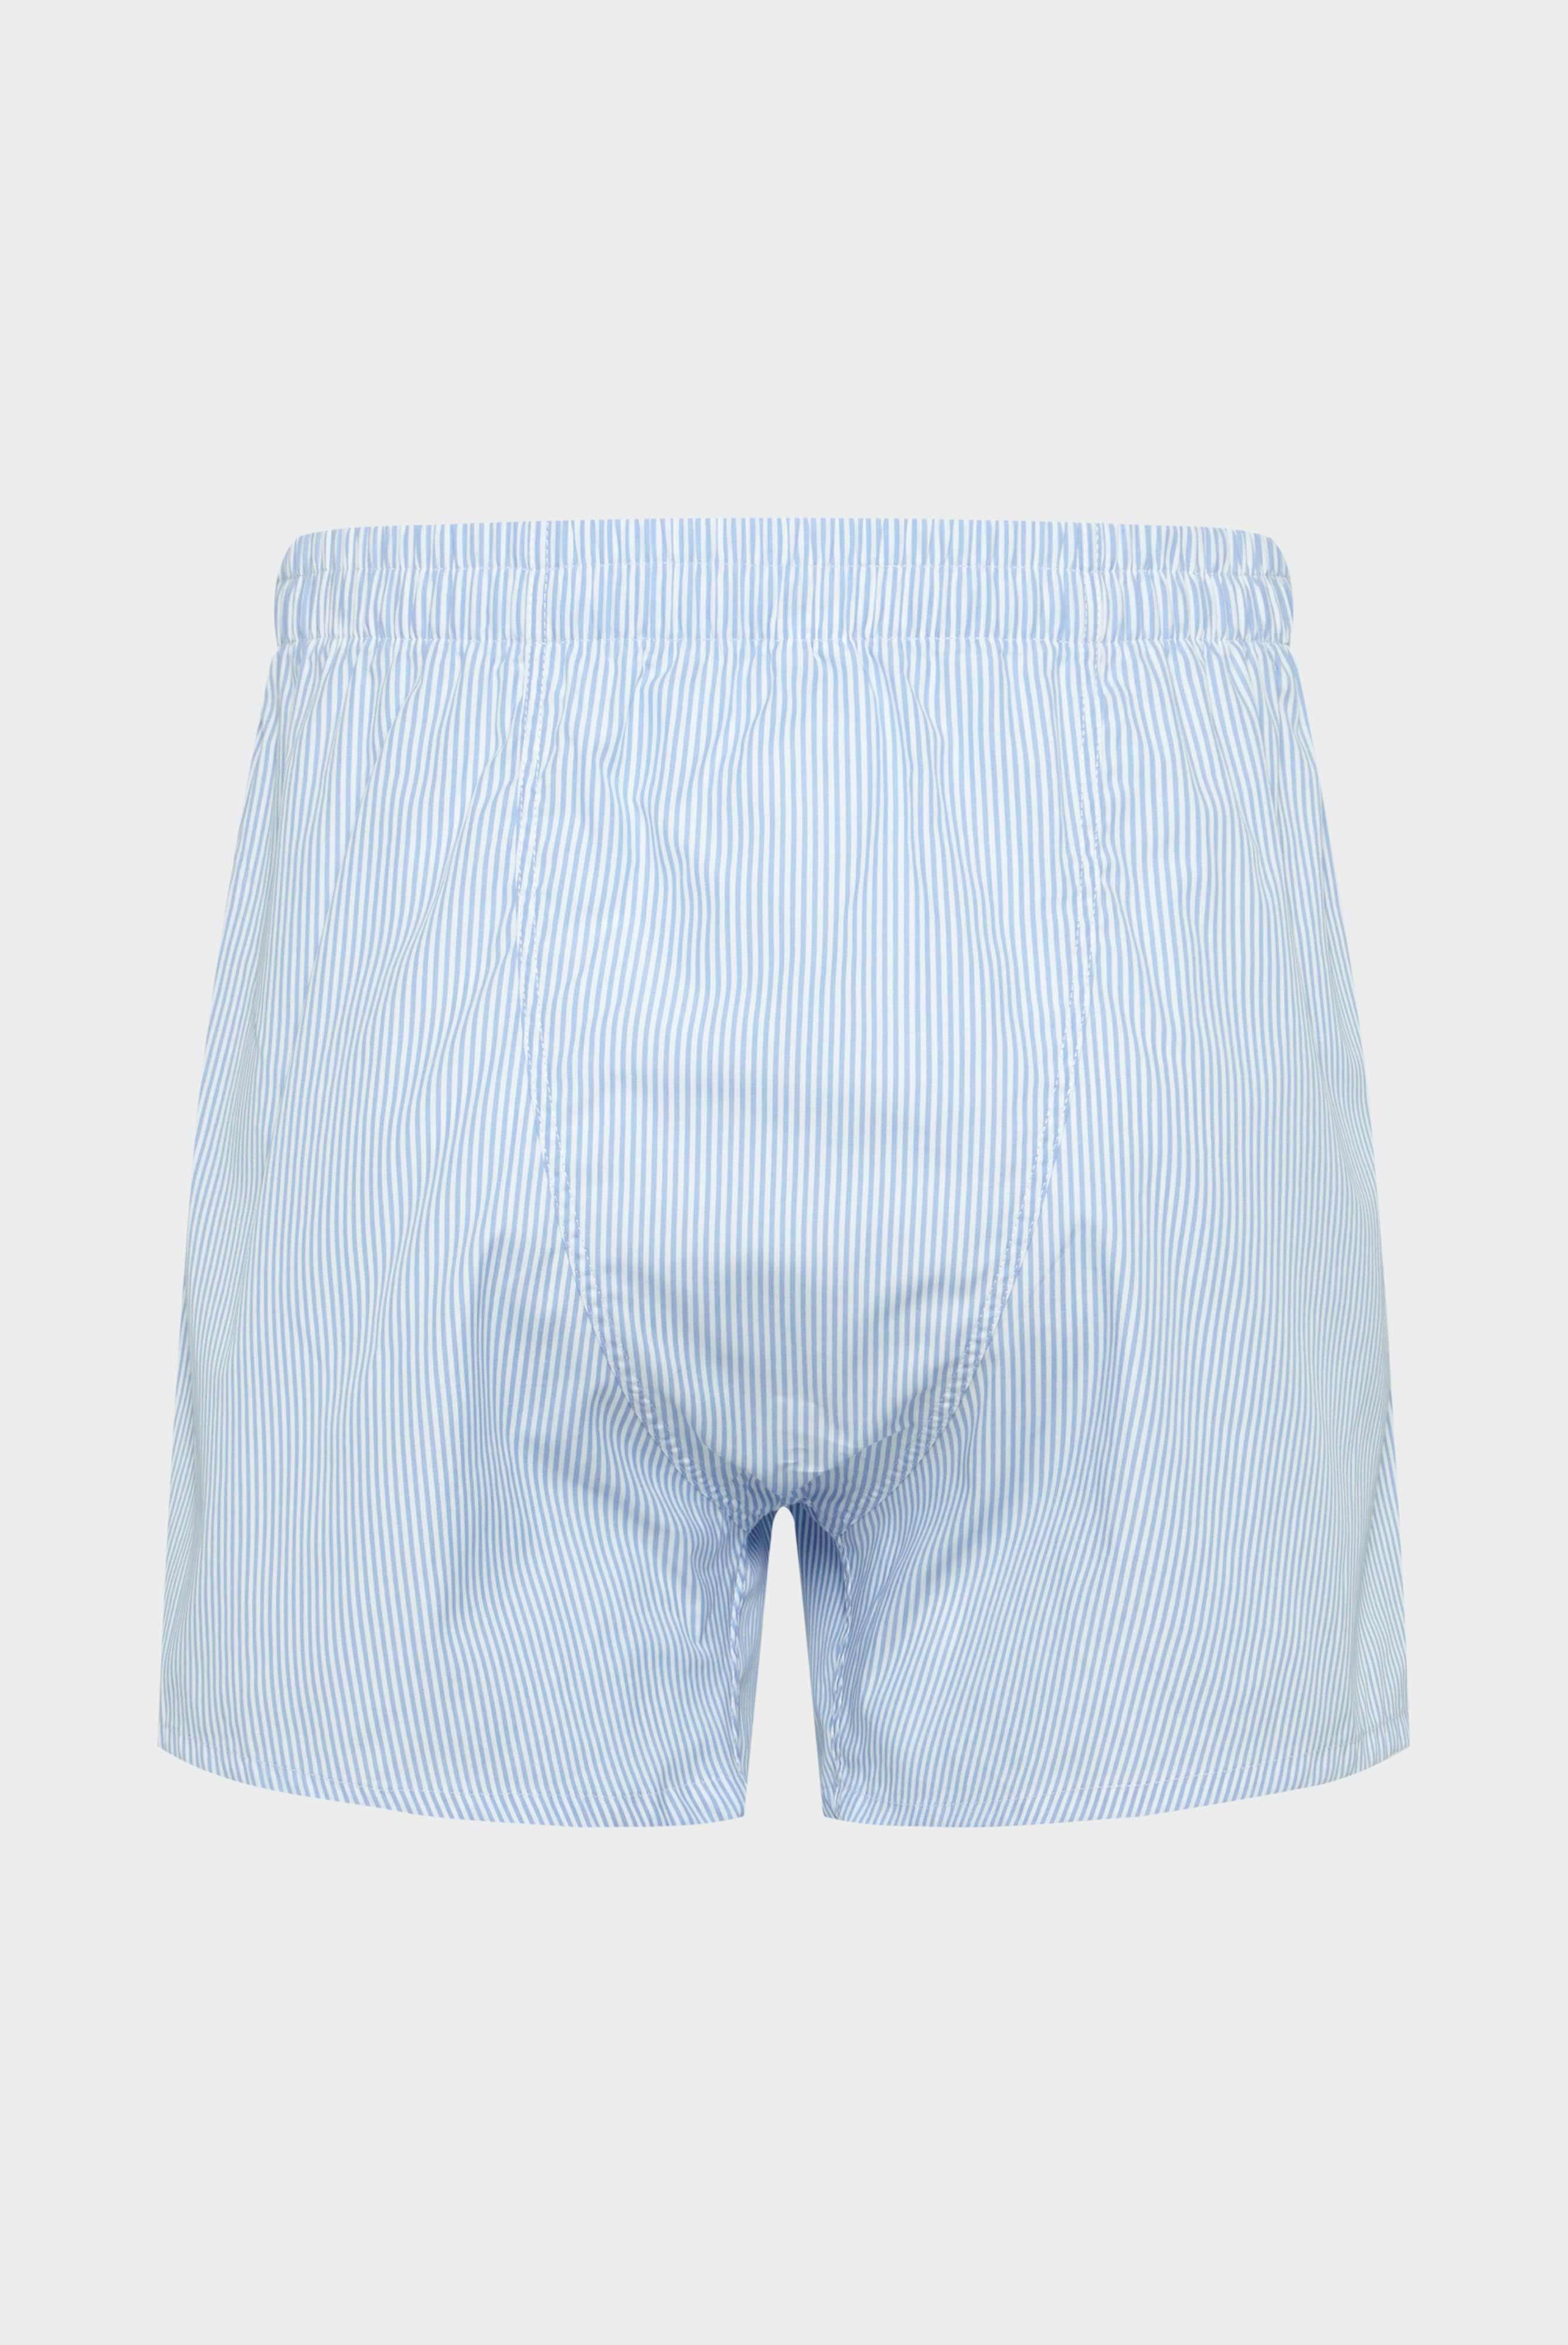 Underwear+Poplin Boxer Shorts+91.1100..141786.720.46